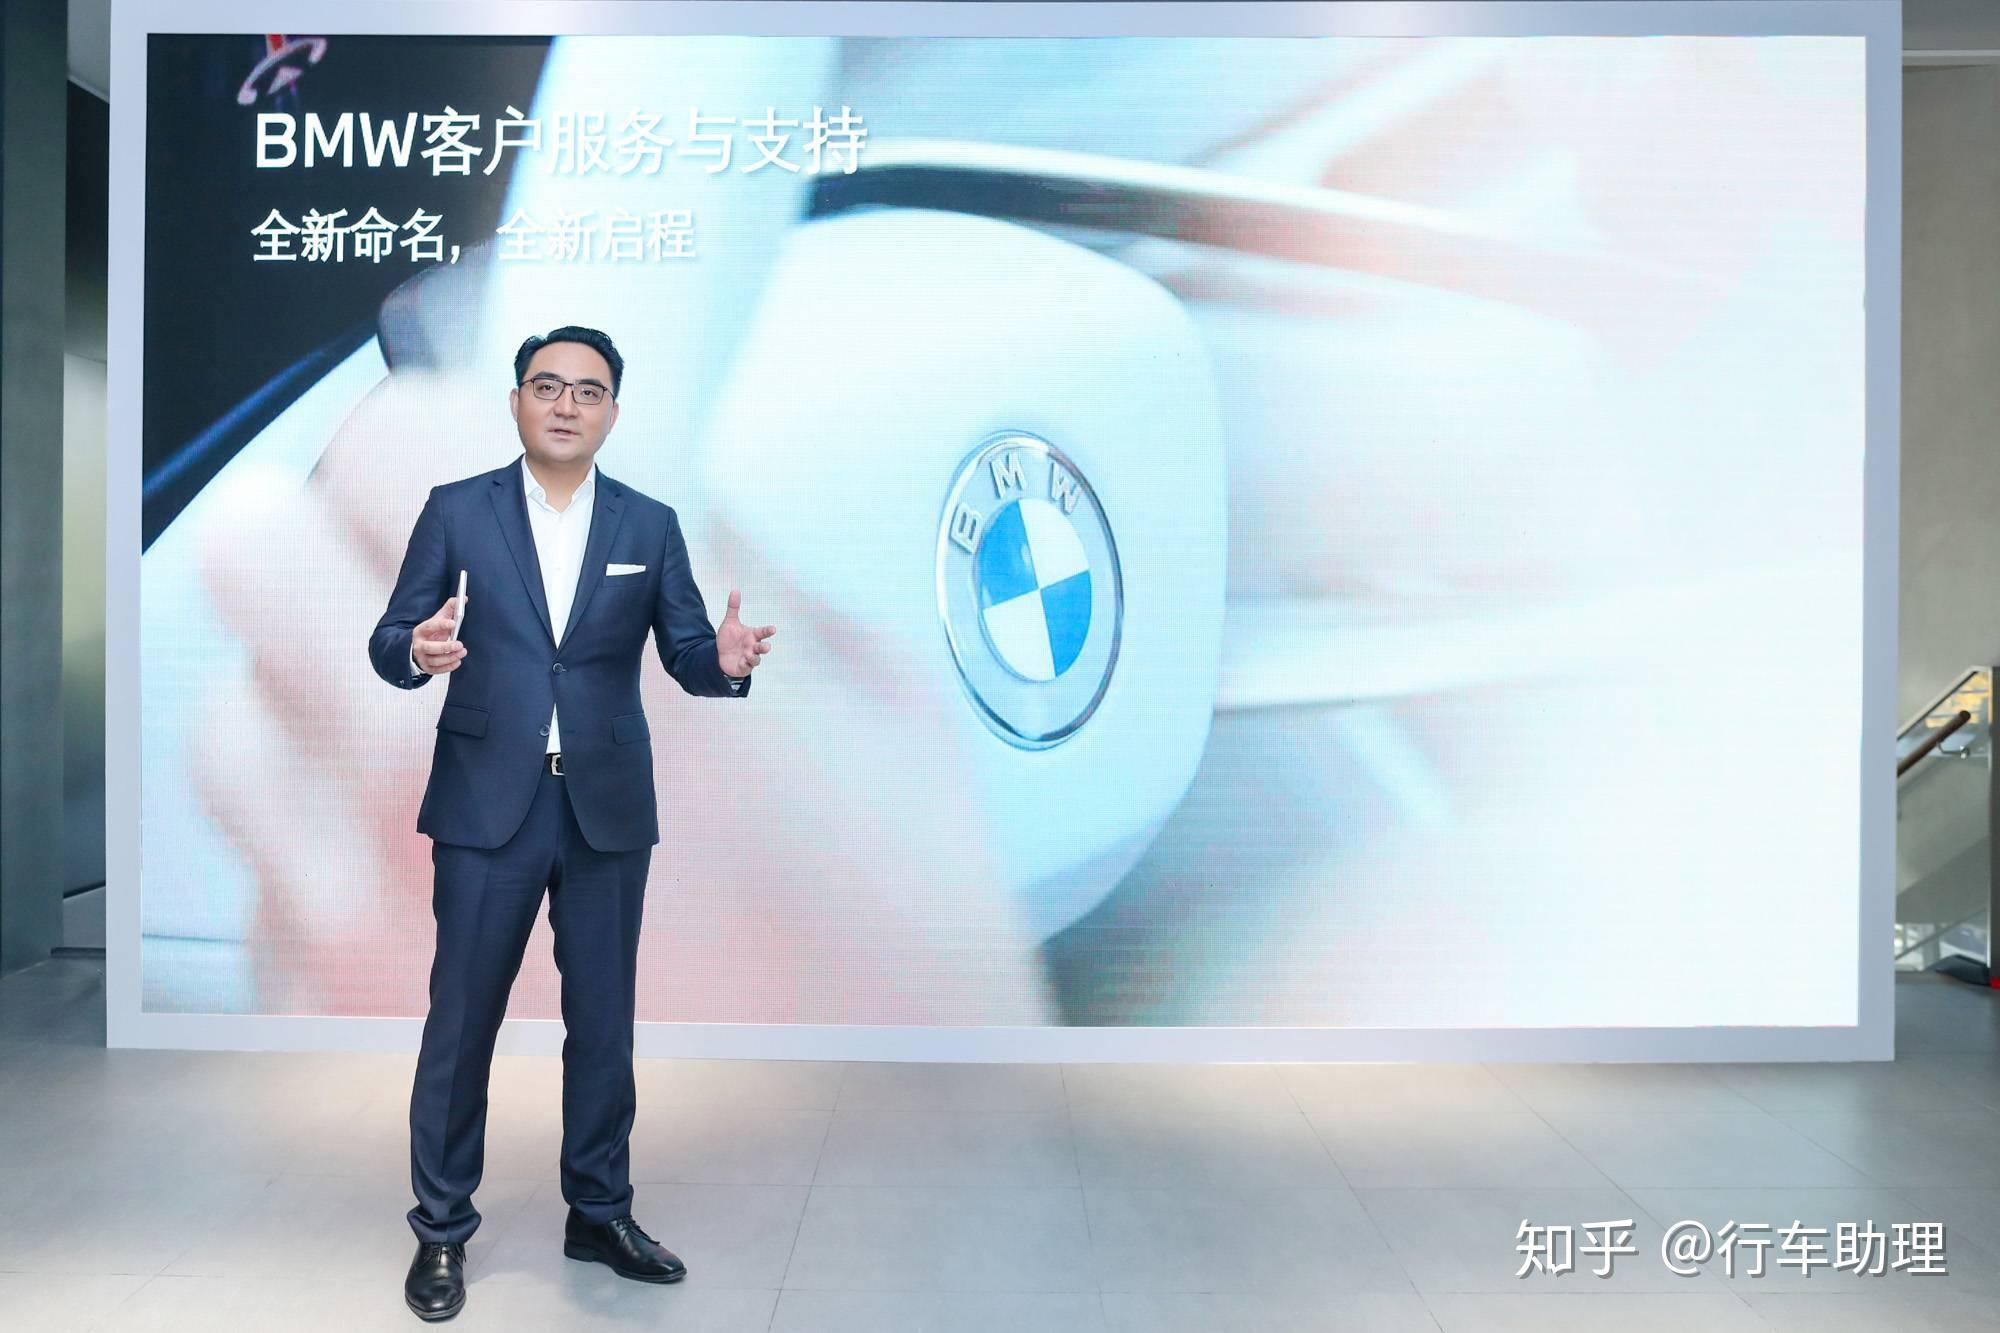 华晨宝马汽车有限公司客户服务与支持副总裁康波博士表示:bmw将始终